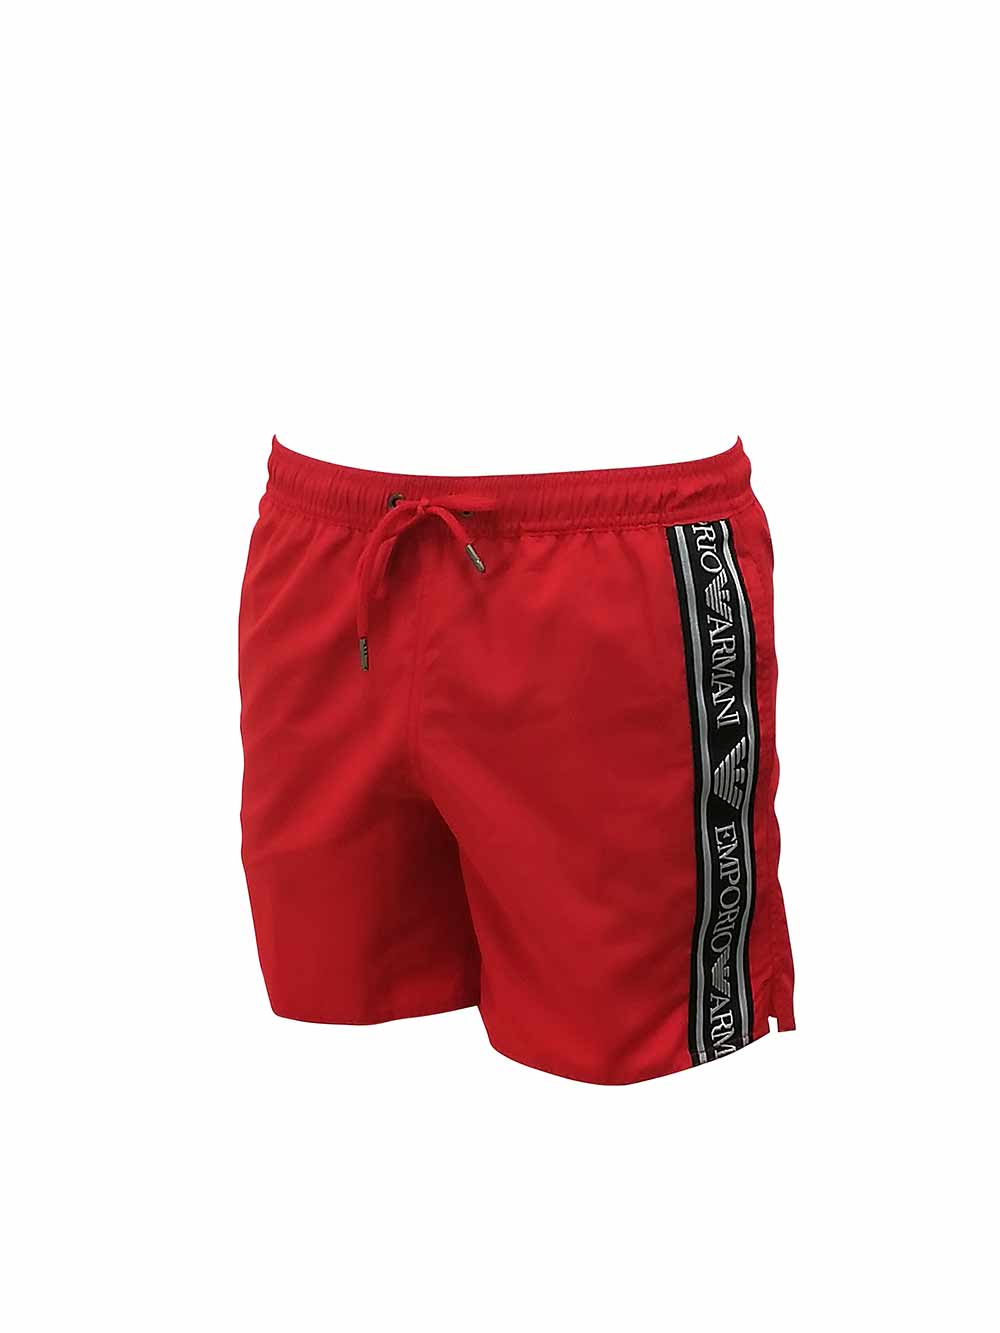 Visita lo Store di Emporio ArmaniCostume Uomo Armani Shorts Swimwear Boxer 